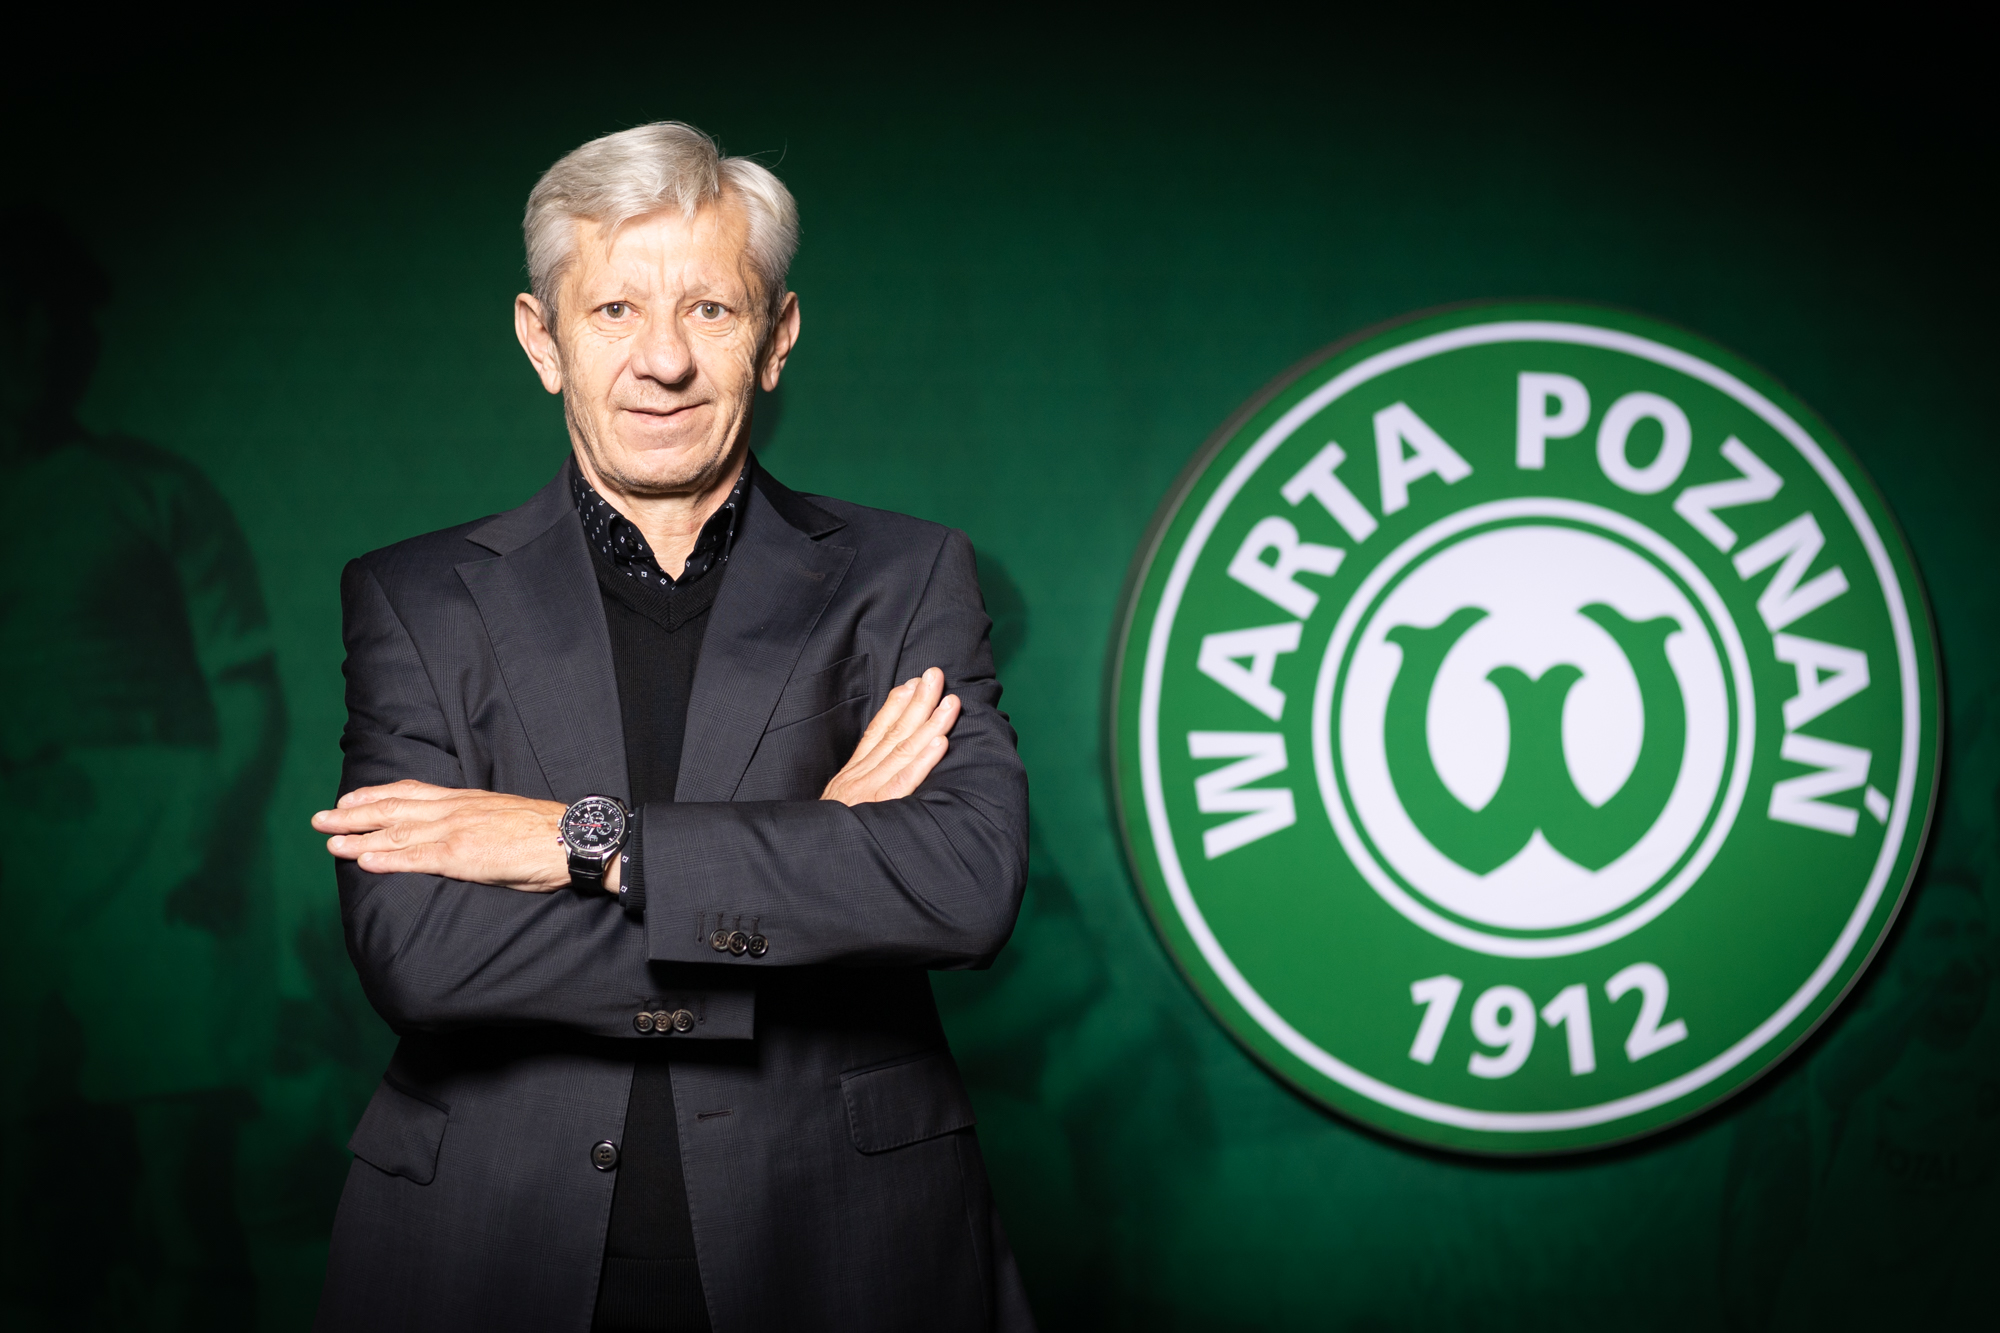 Warta Poznań Tadeusz Fajfer - Klaudia Berda  - Warta Poznań